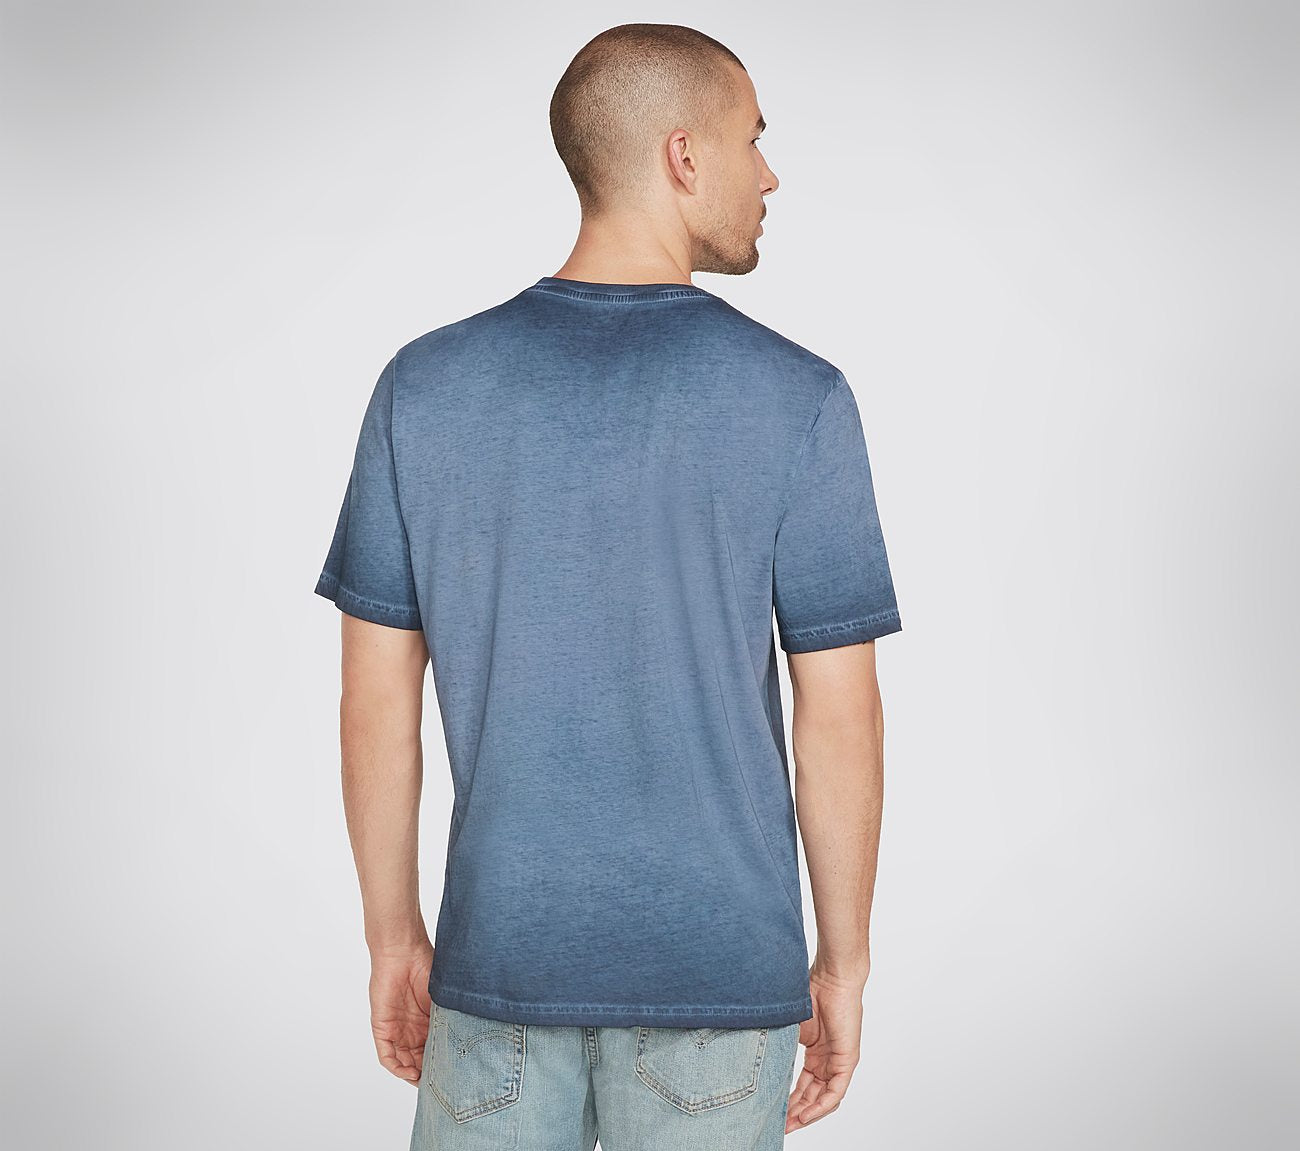 Skech-Dye Americana 92 T-Shirt